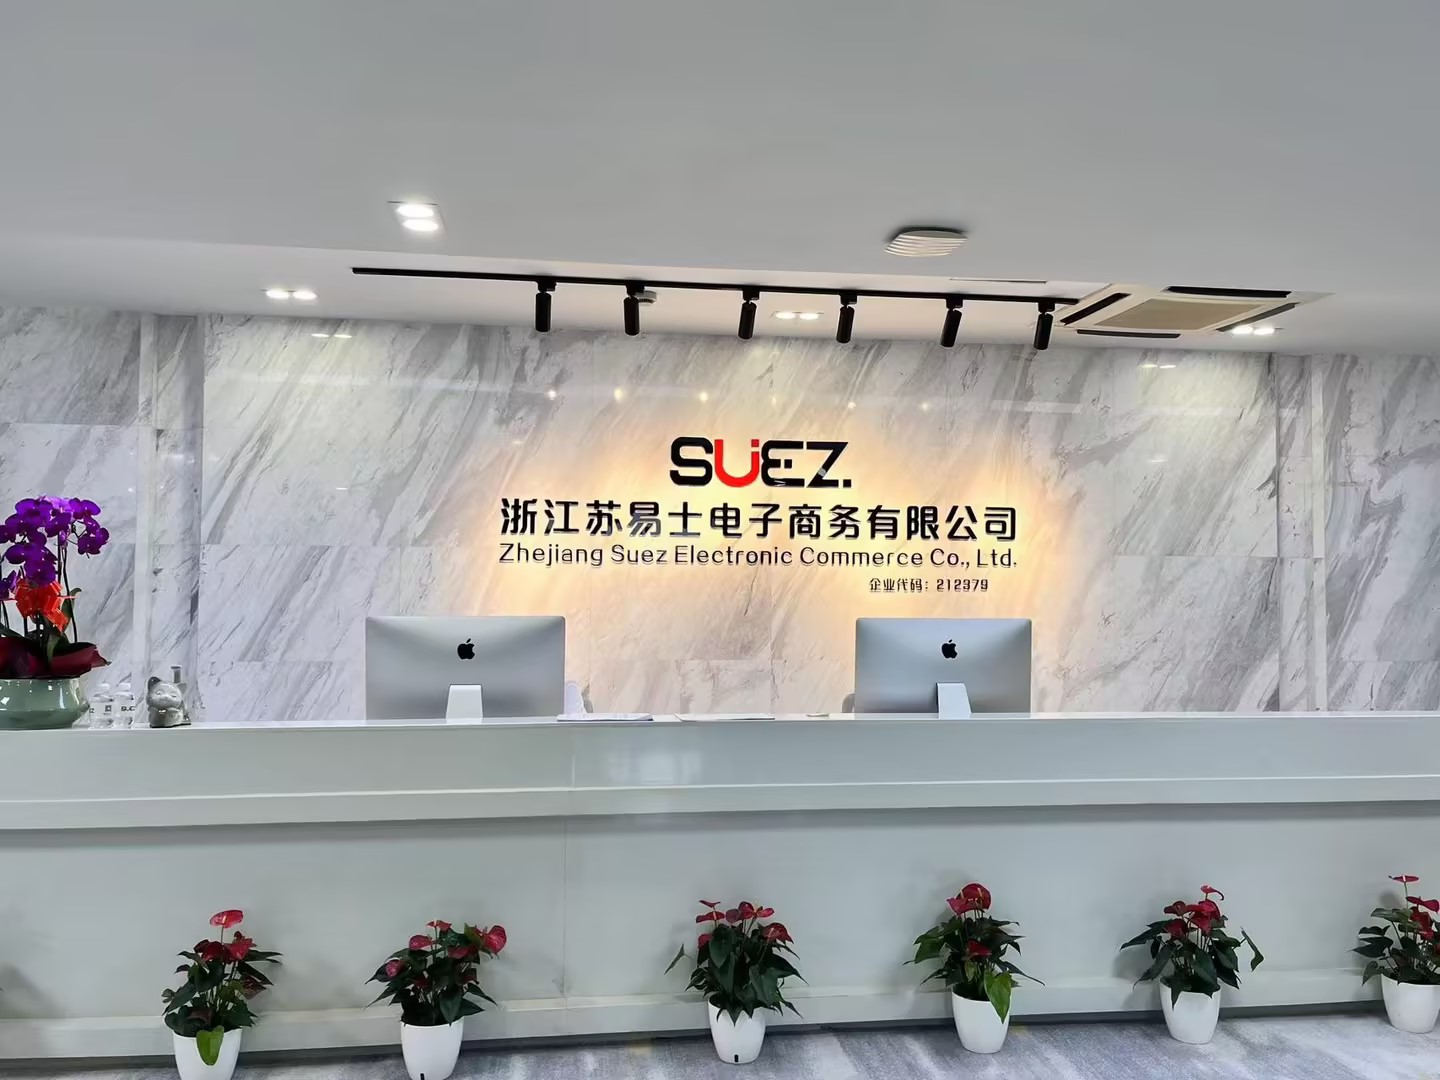 suez电商与投资巨头达成战略合作 强强联合促进服务升级